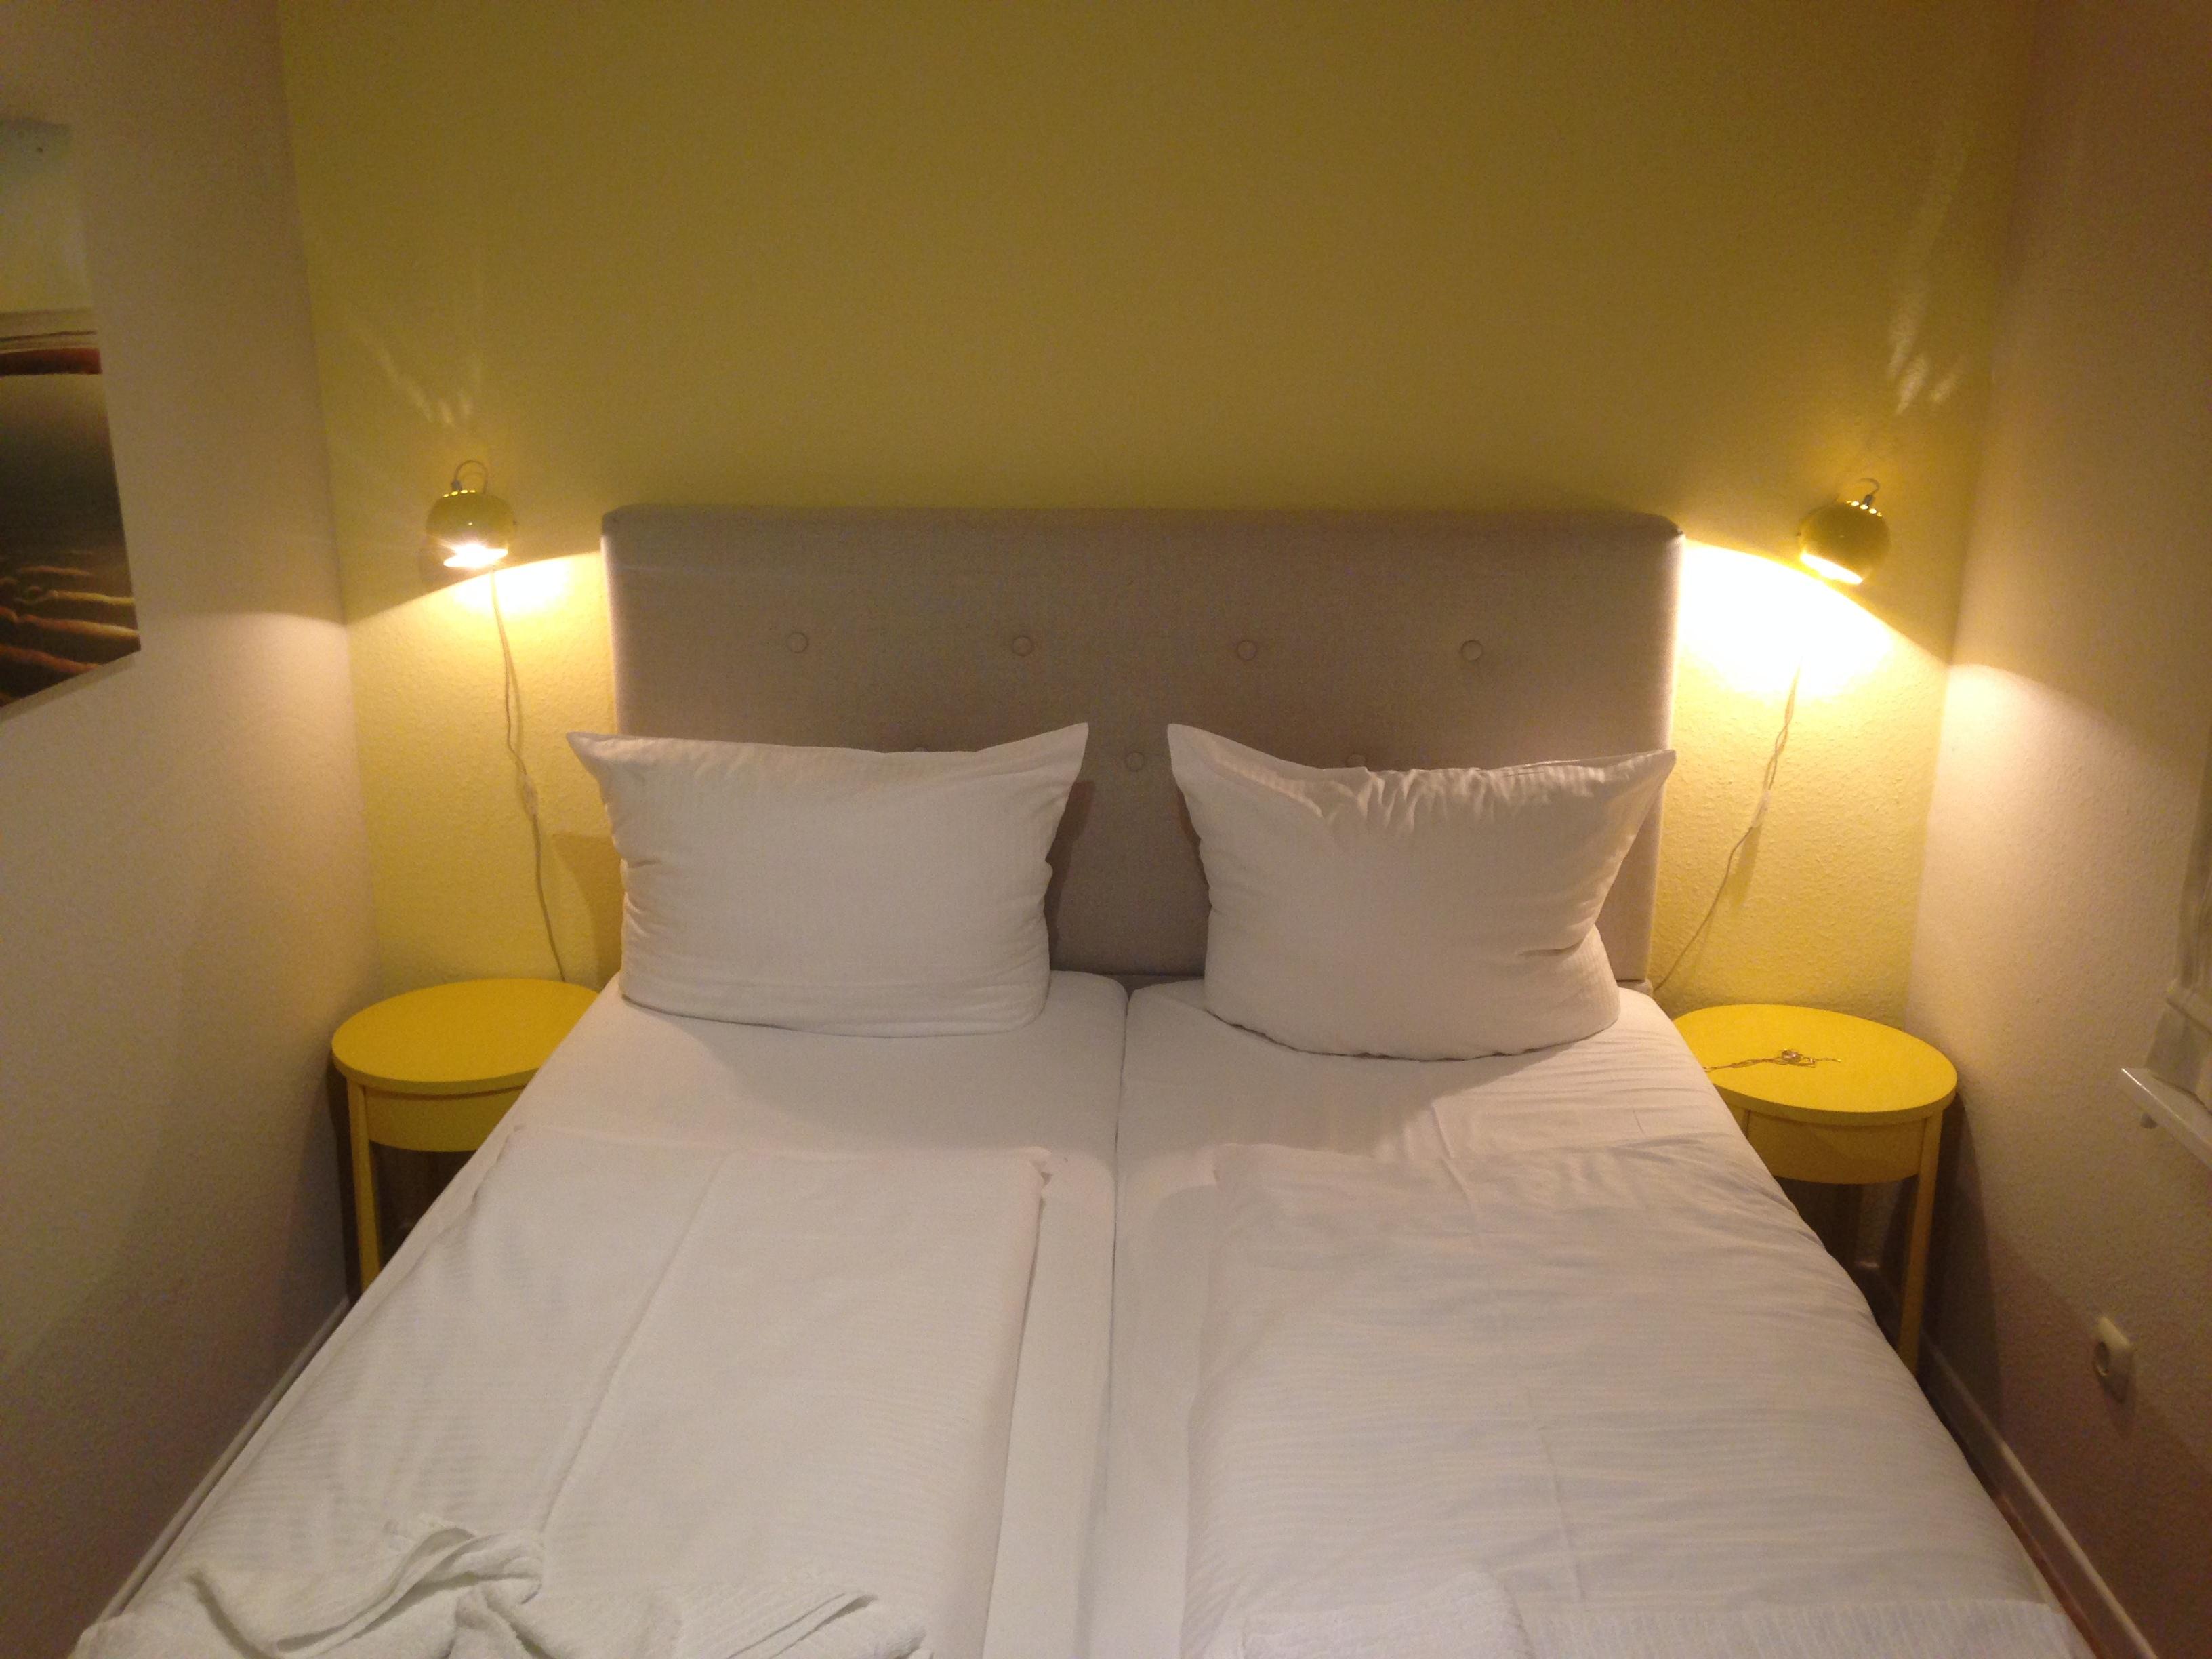 Schlafzimmer in den Farben gelb und grau #bett ©Andrea_Fischer